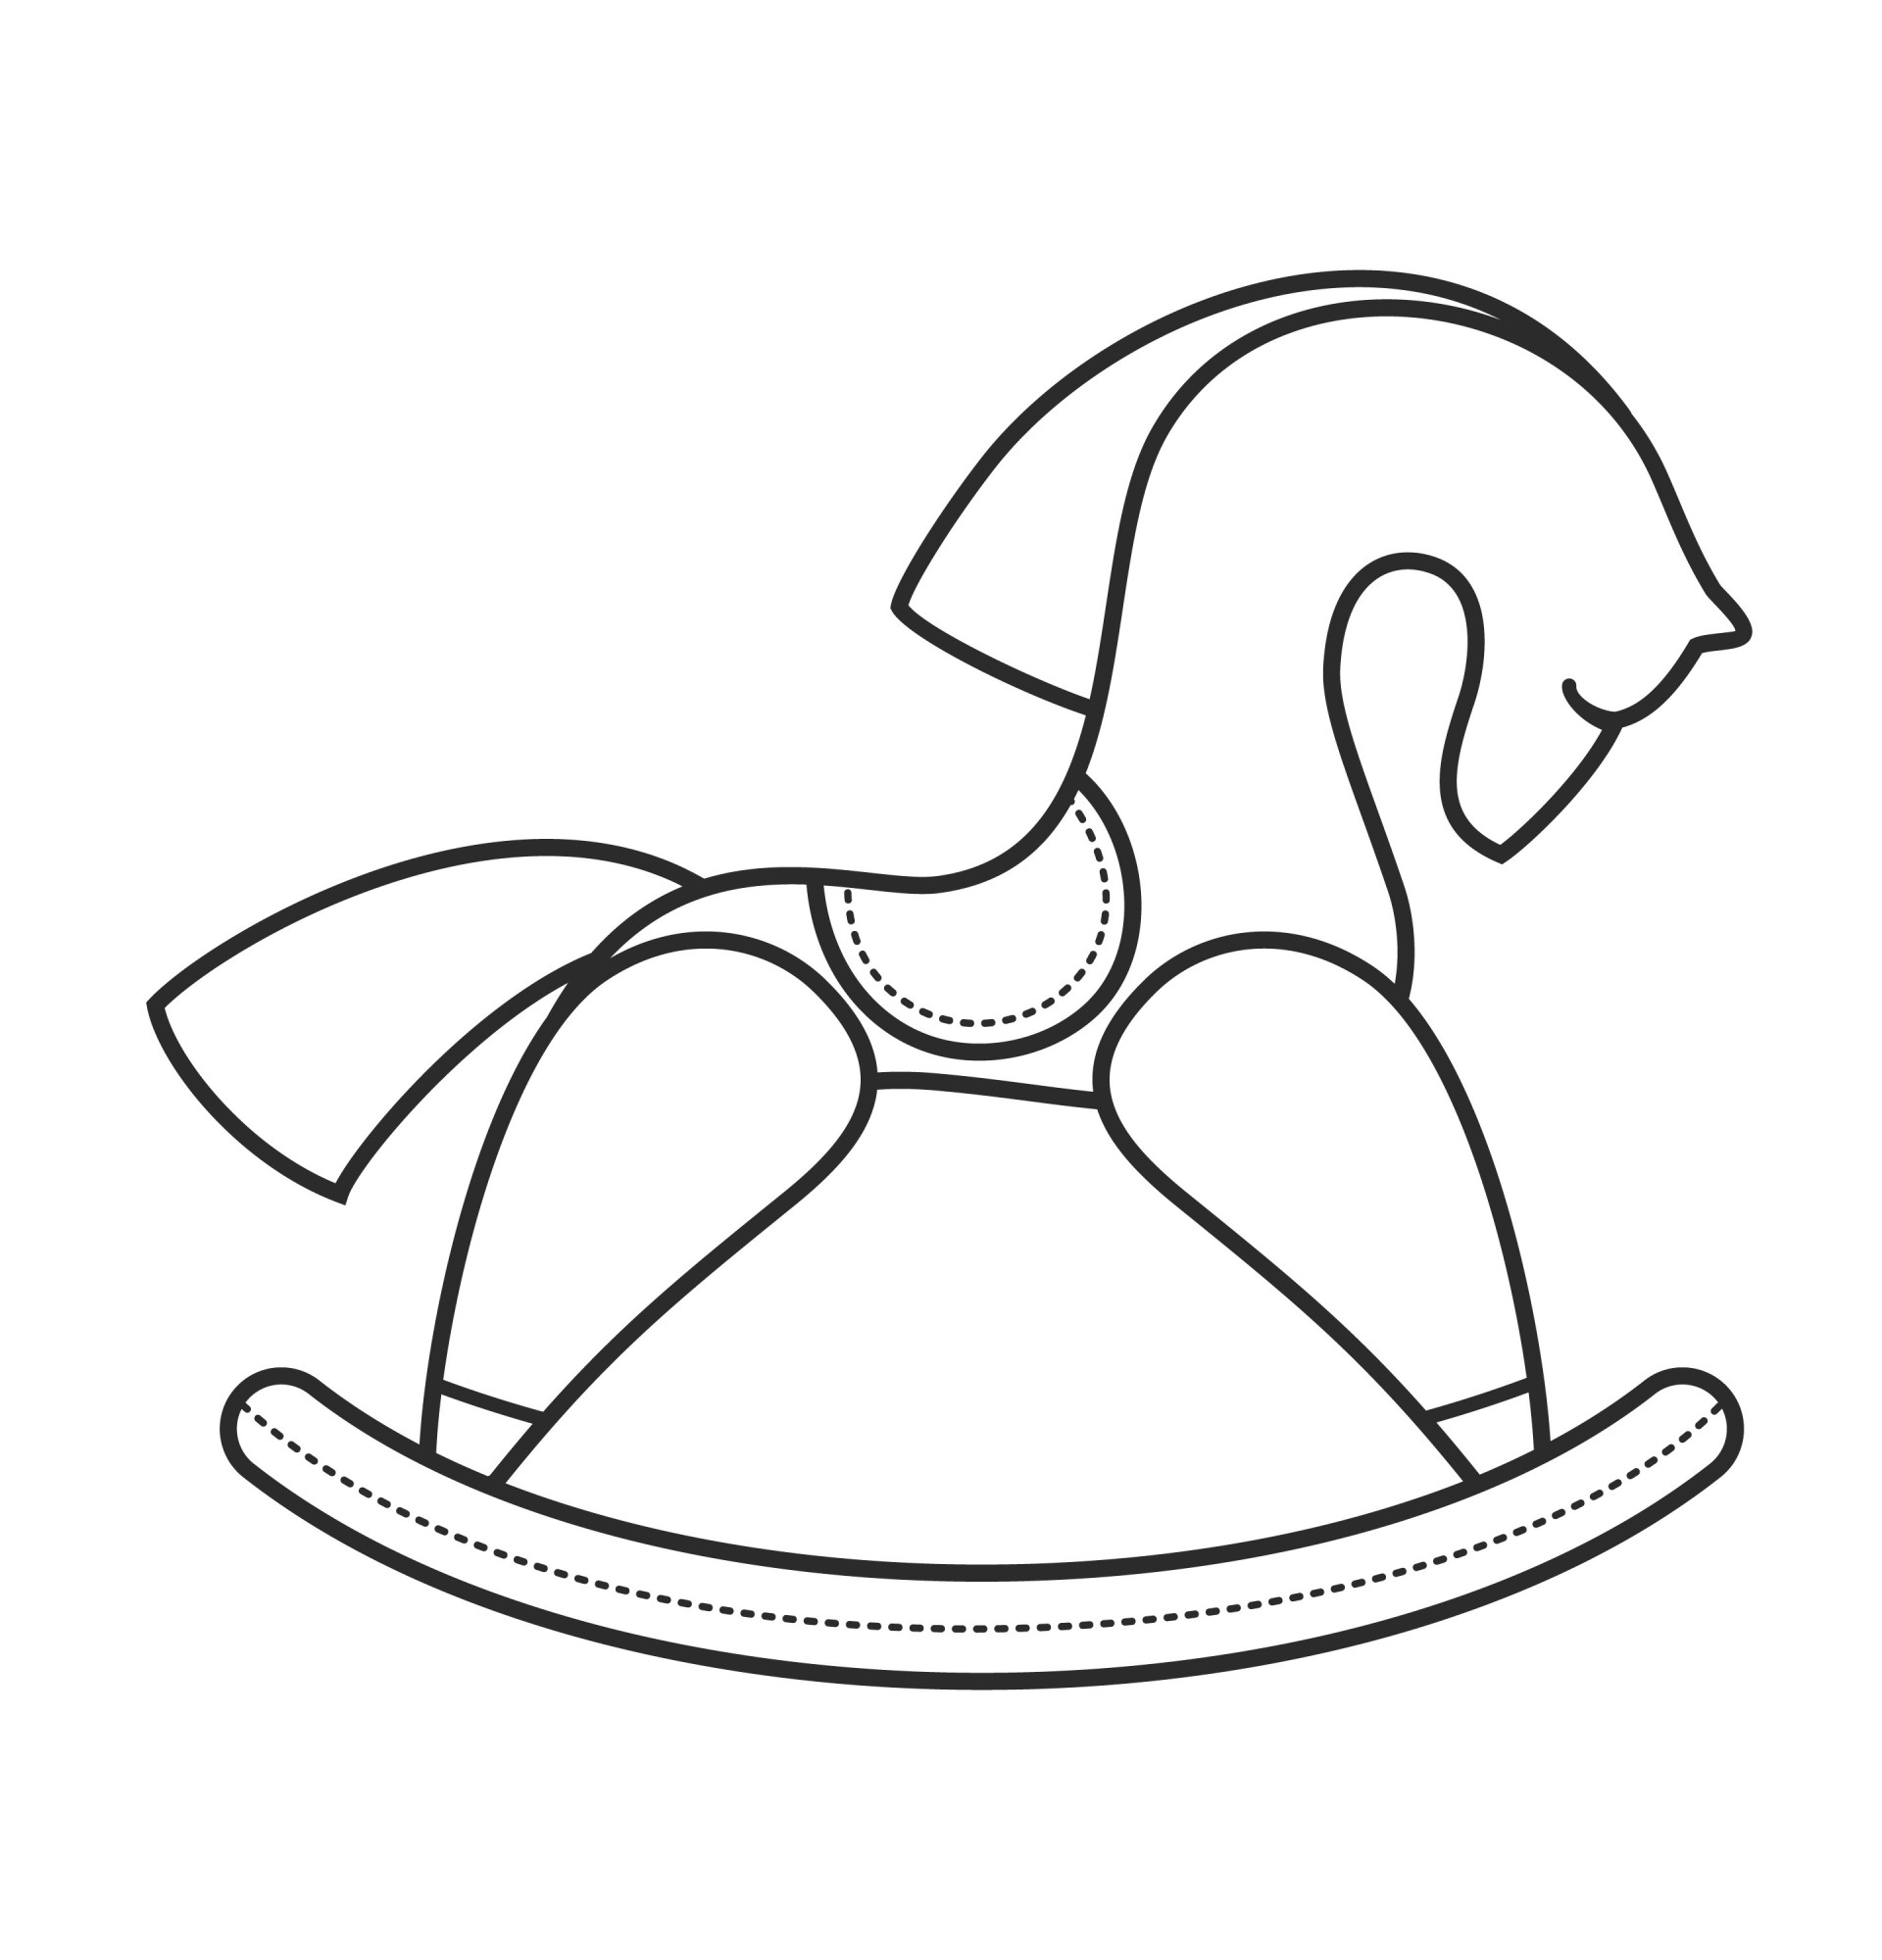 Раскраска для детей: деревянная игрушка лошадка качалка